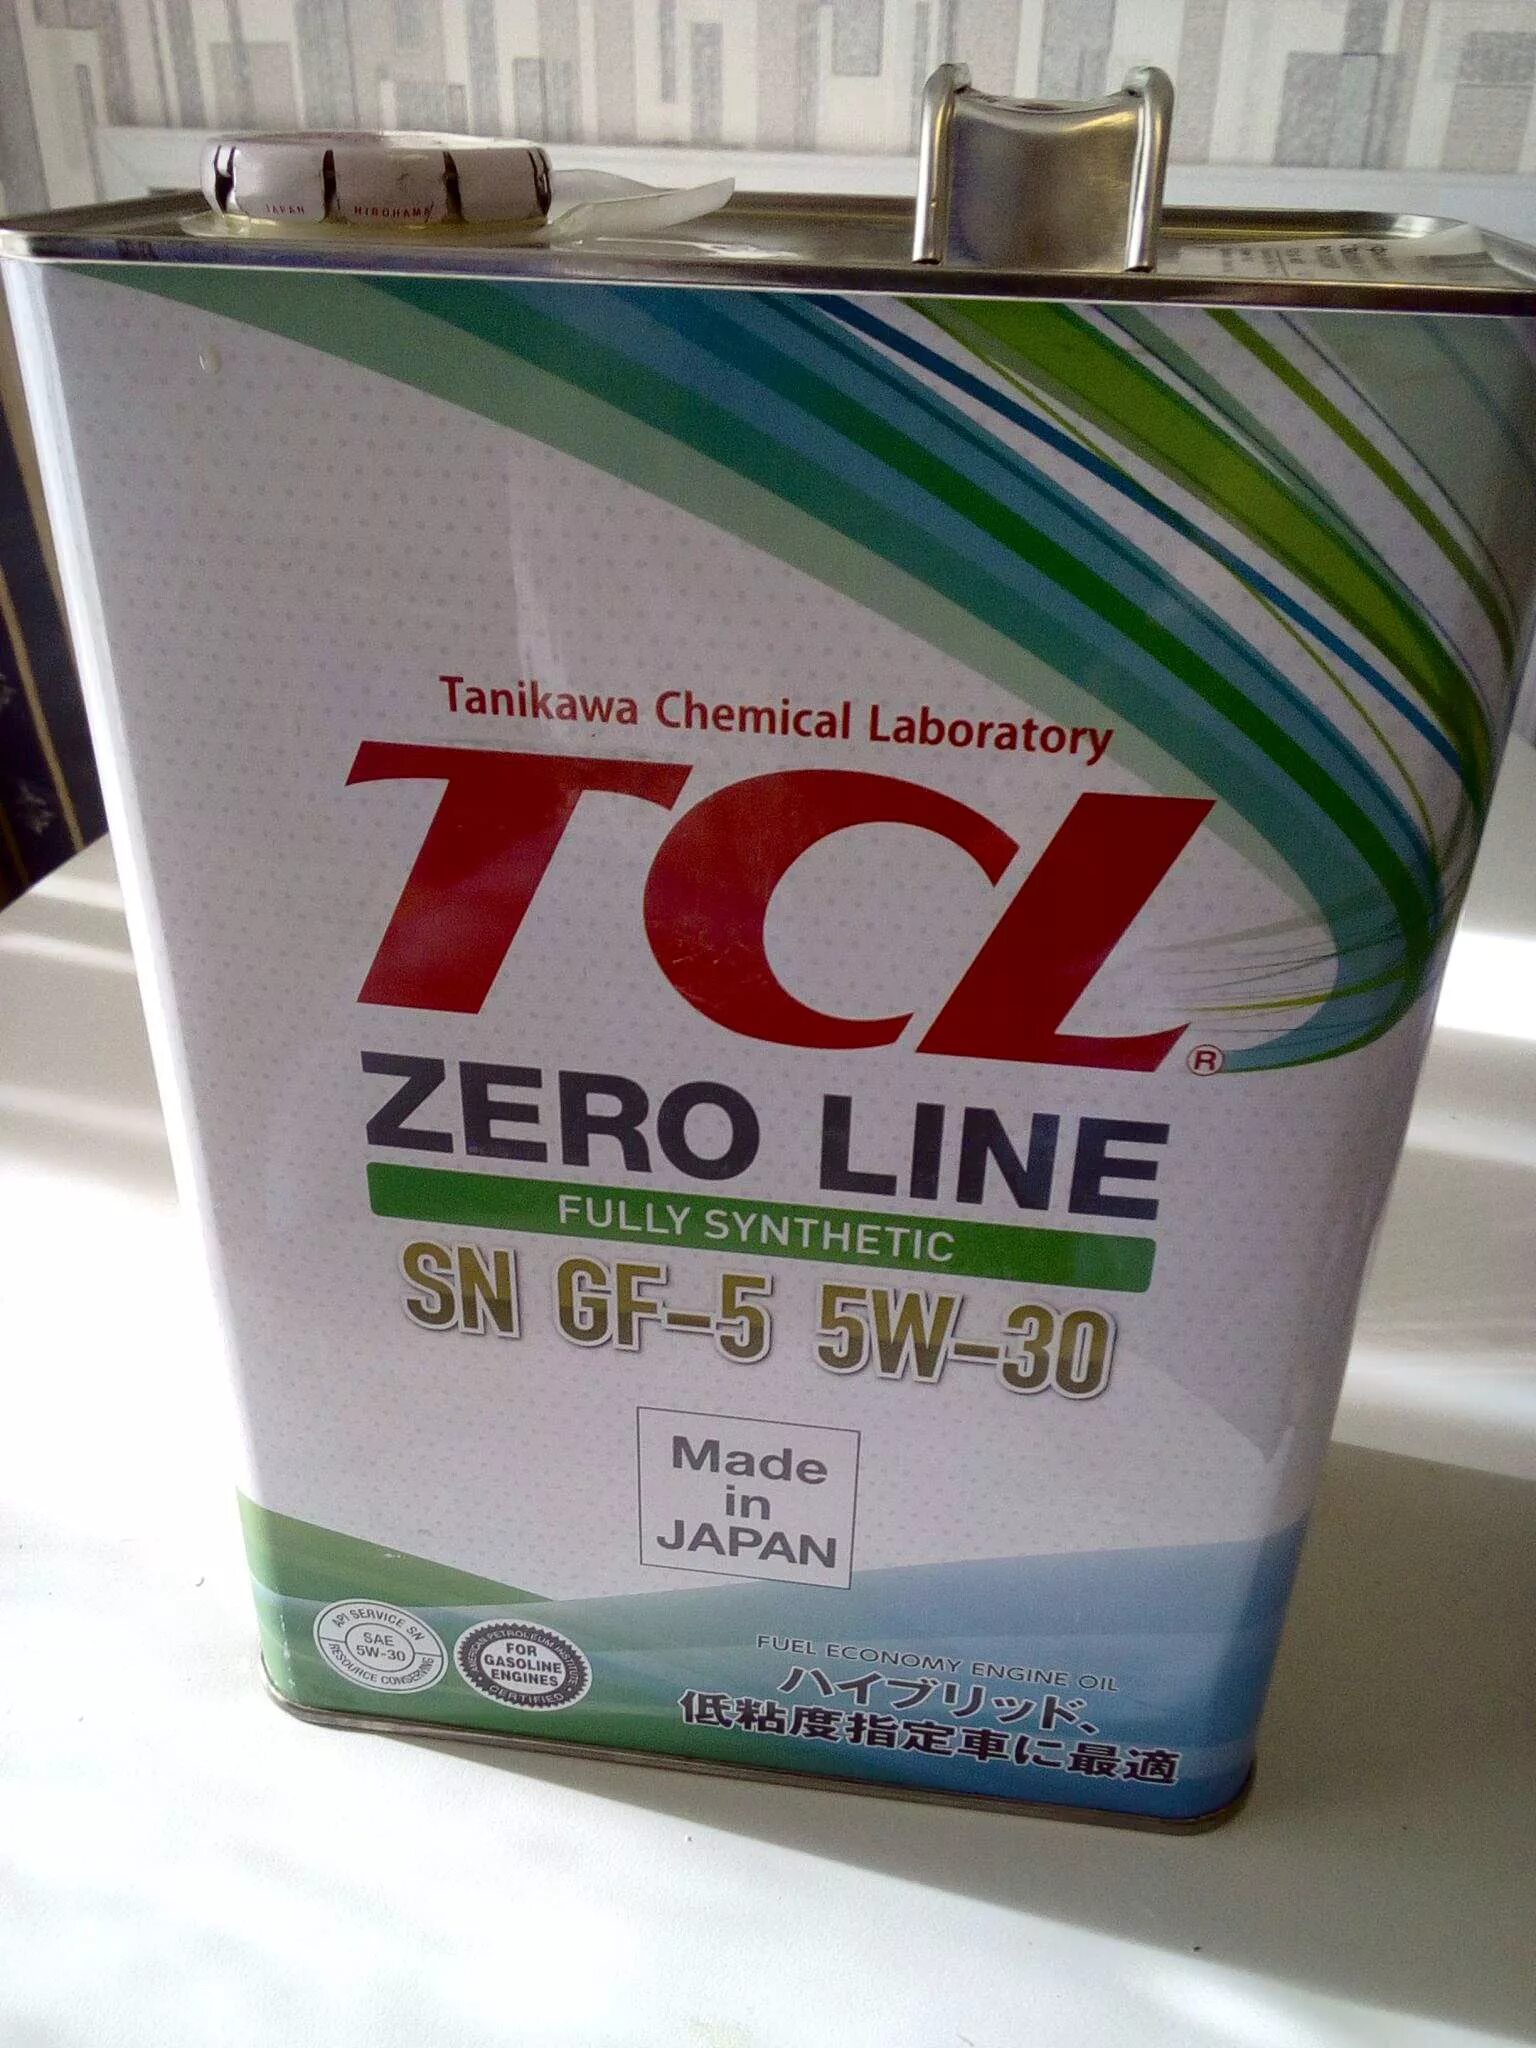 TCL Zero line 5w30. Масло TCL Zero line 5w-30. TCL SN gf-5 5w-30. TCL 5w-30 gf-5.